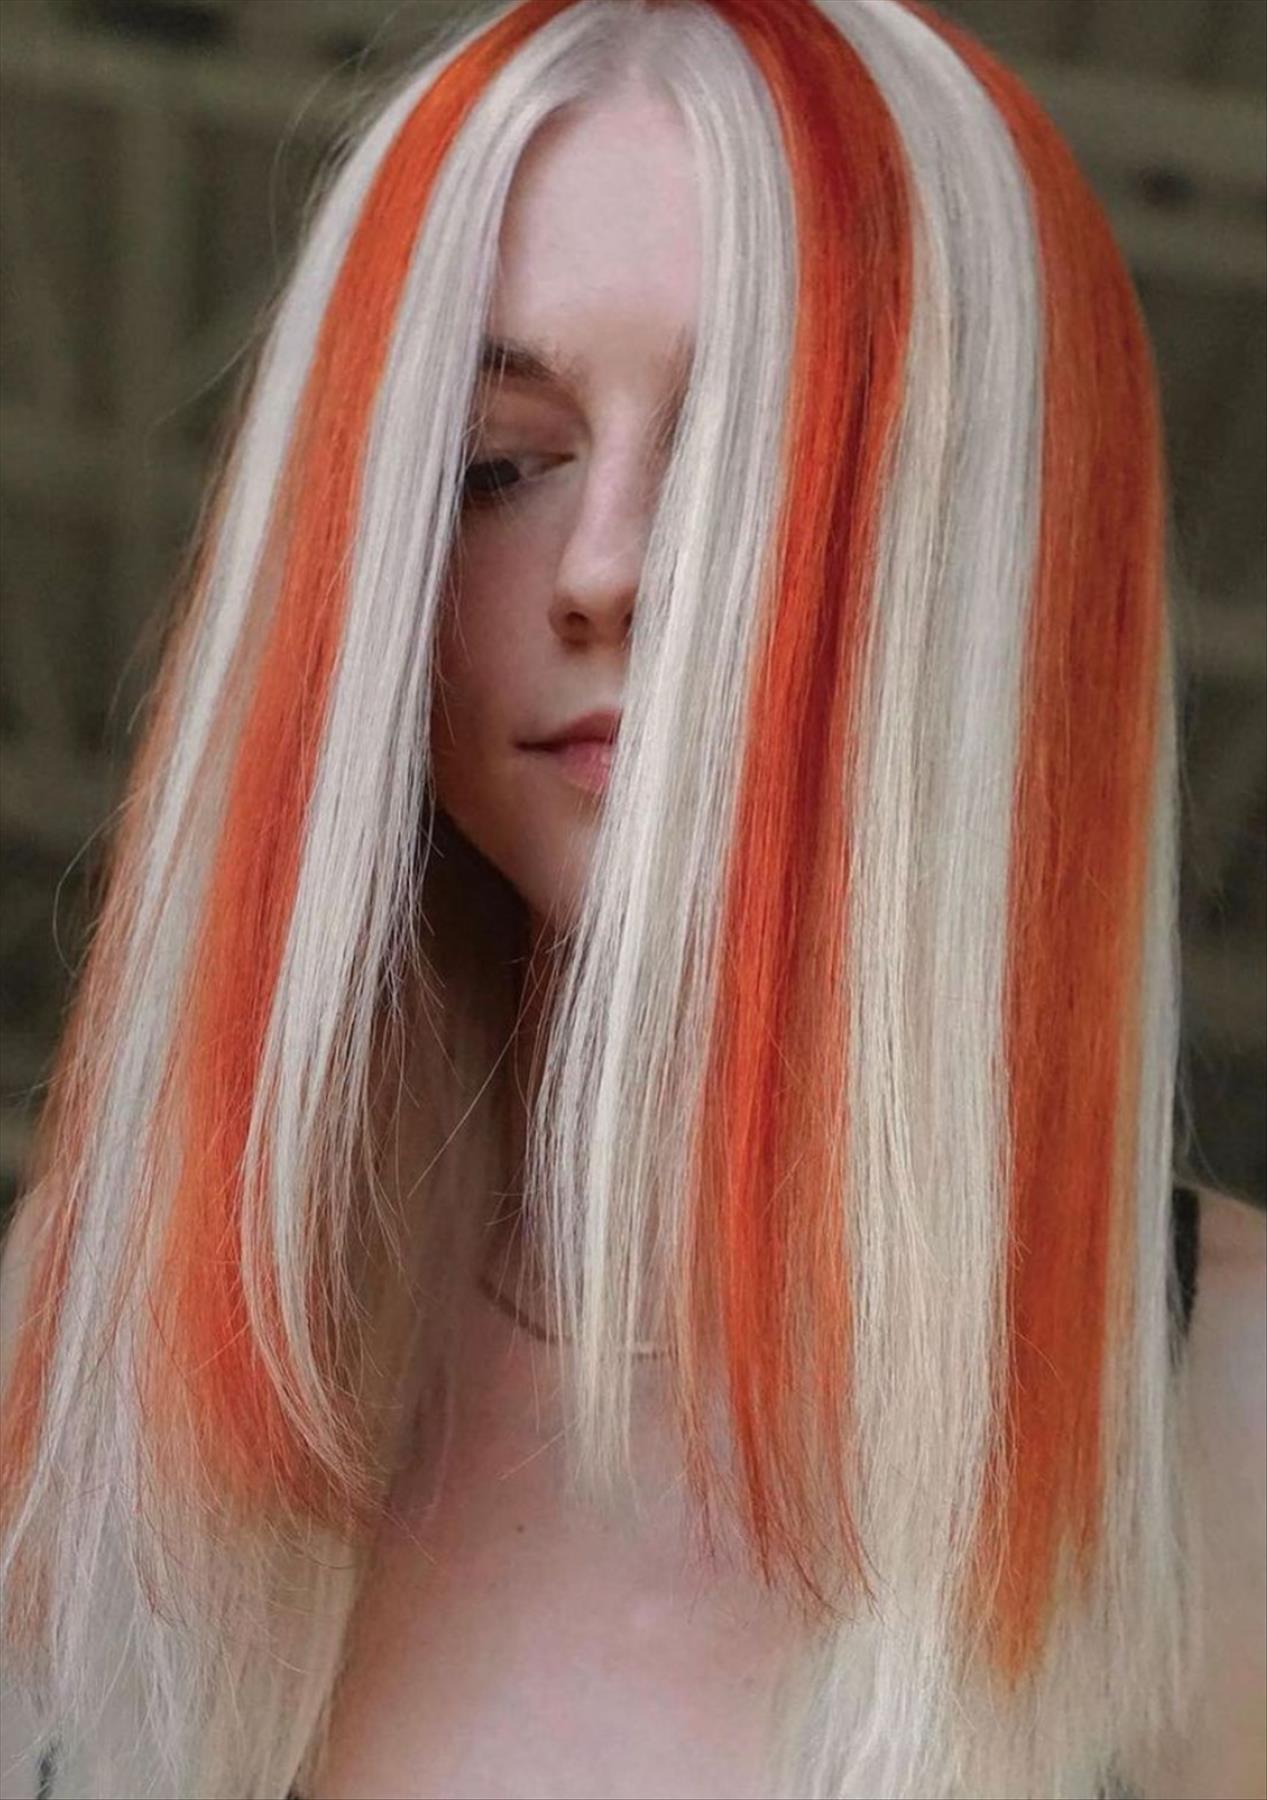 Alluring Spring Hair Color Trends for 2022 Like A TikTok Trendsetter